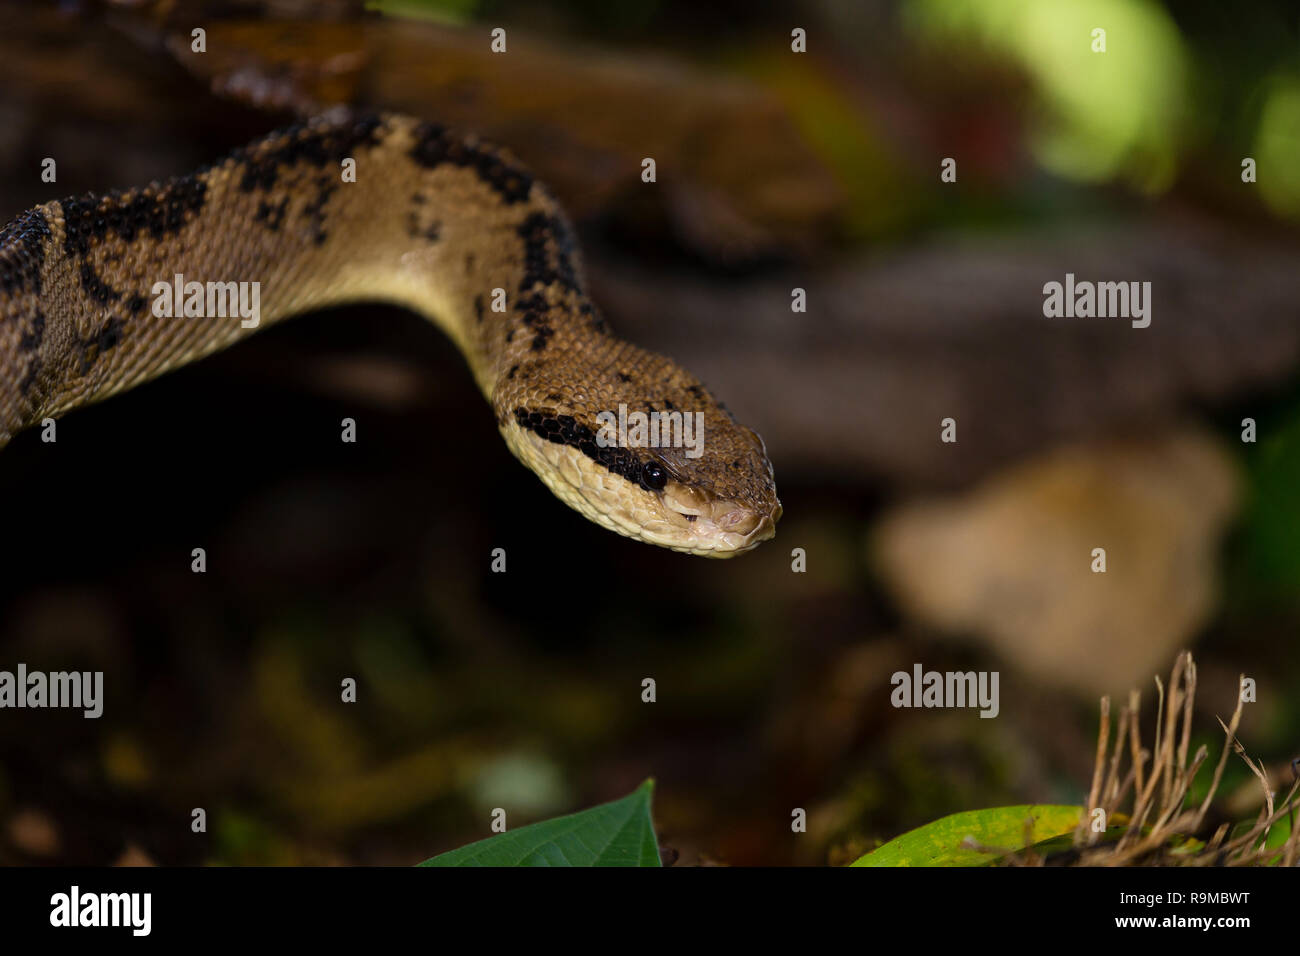 Bushmaster serpiente en Costa Rica Foto de stock